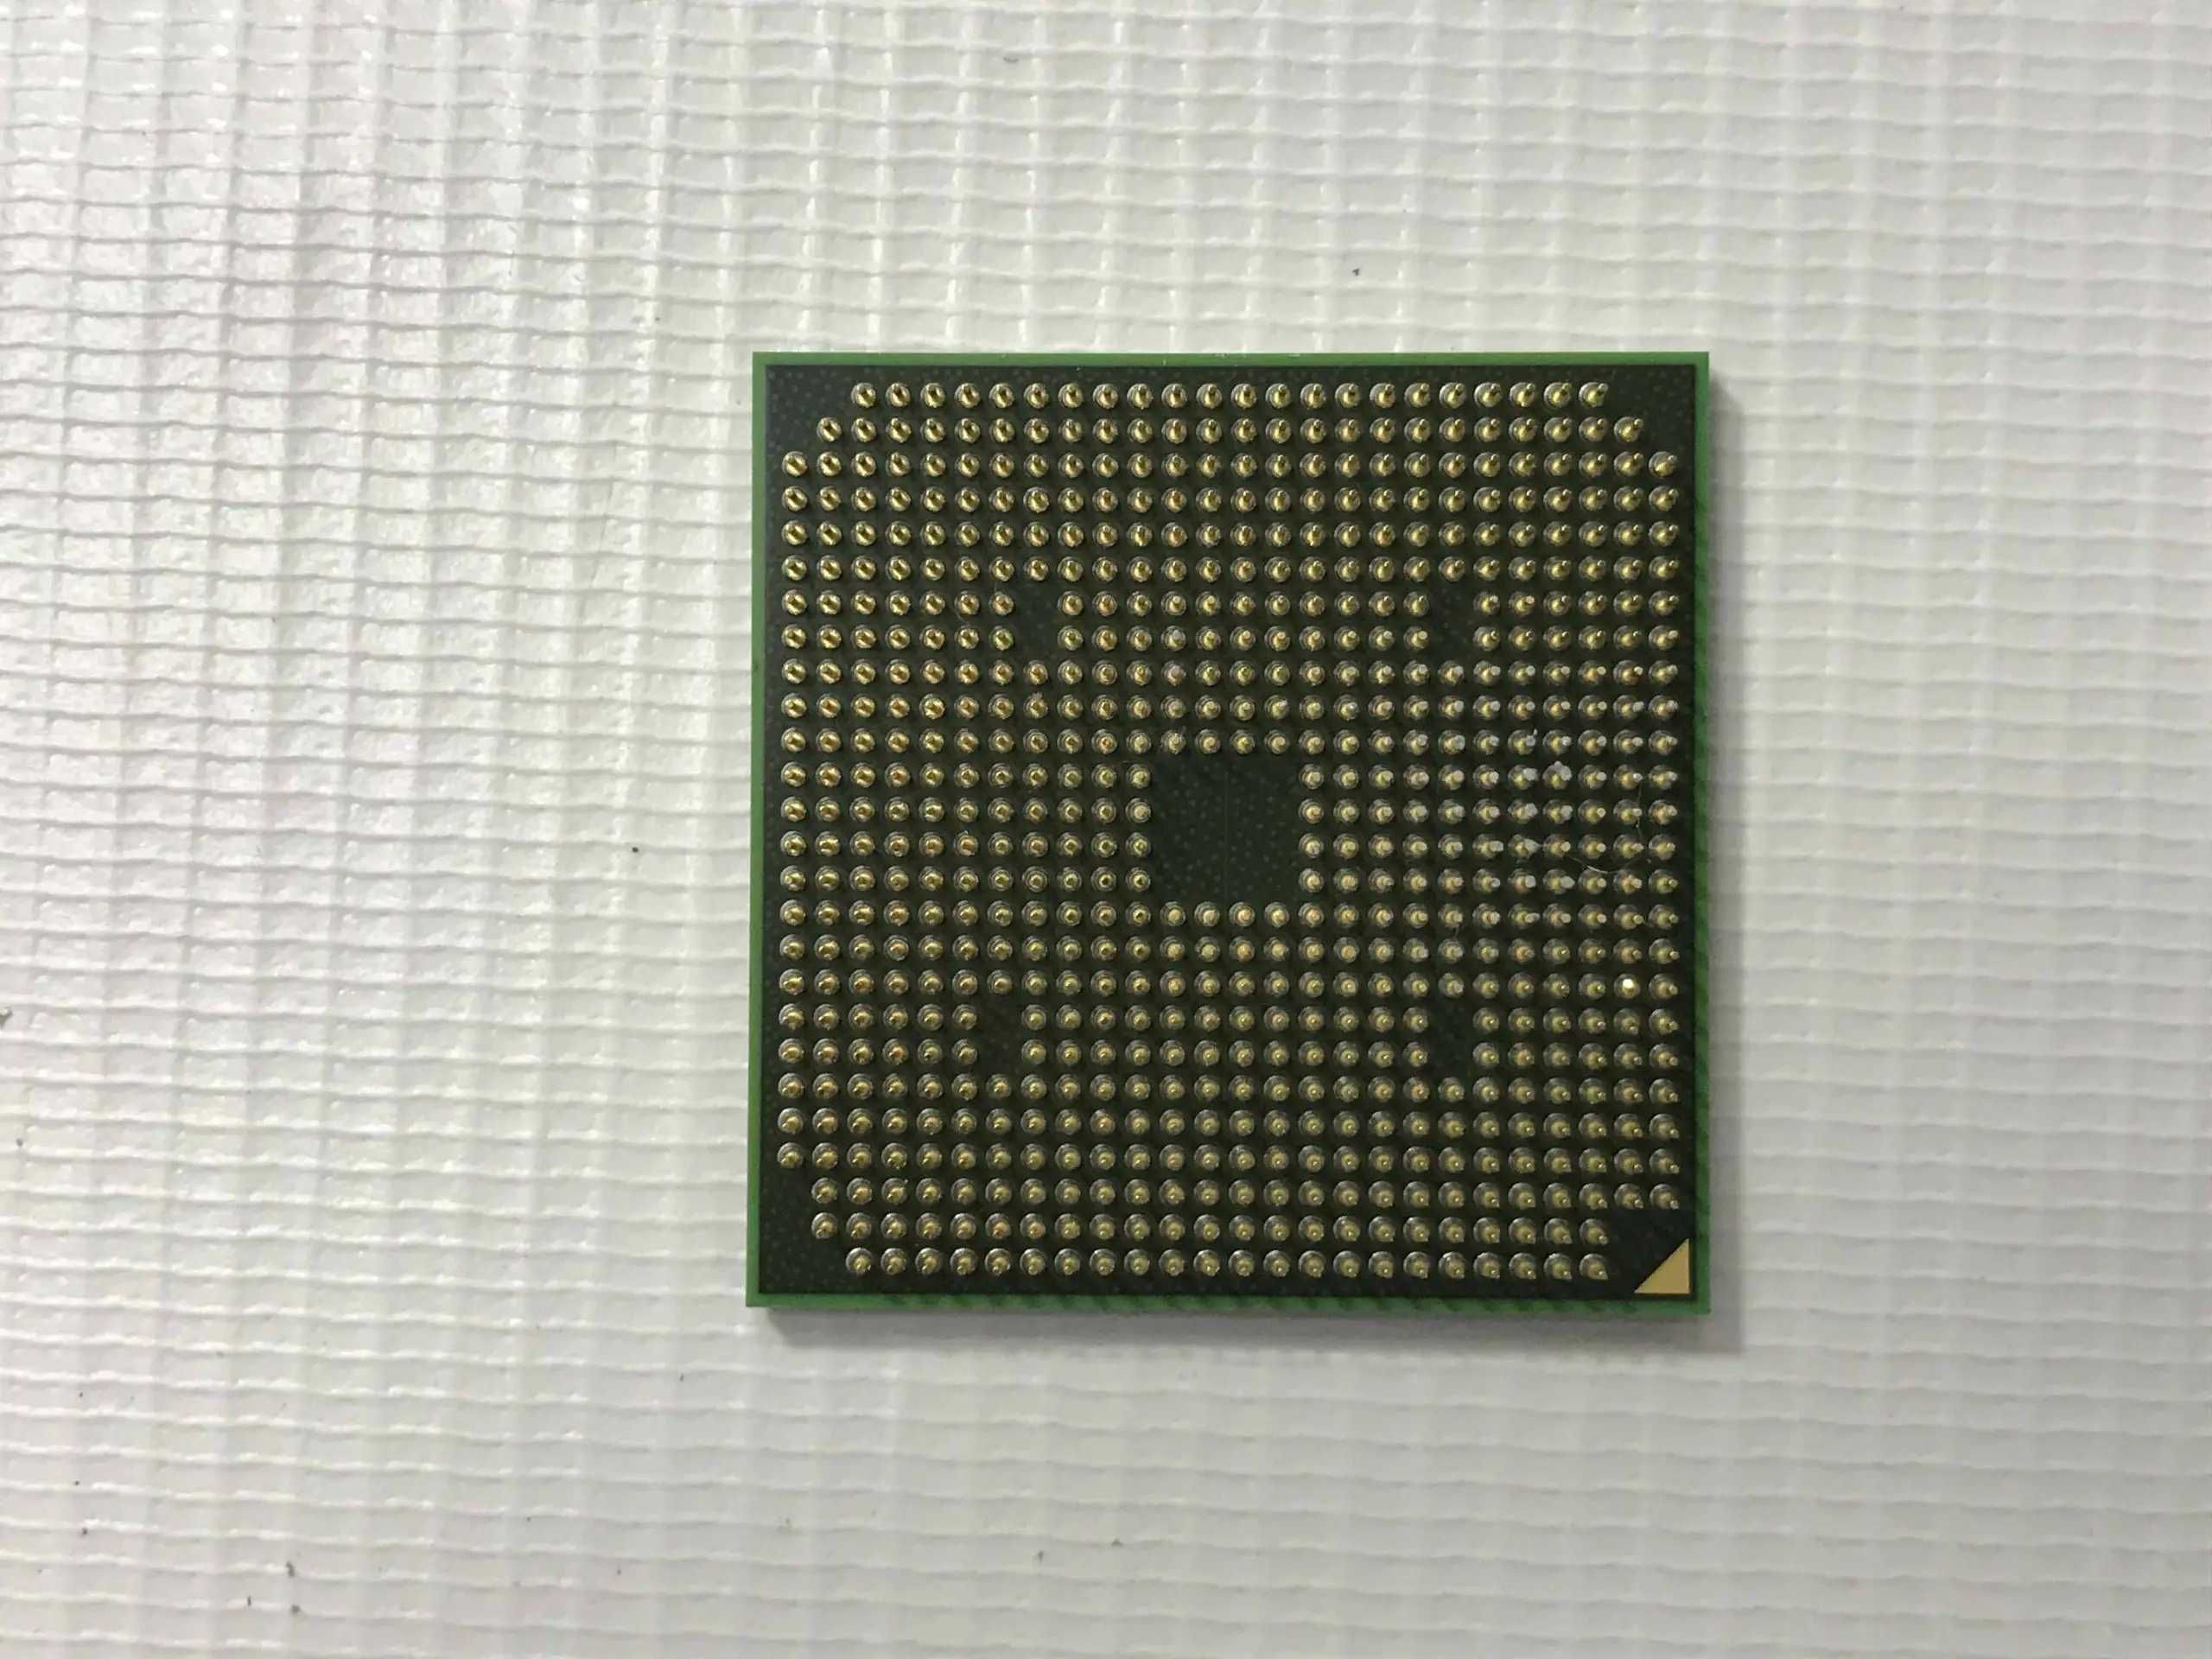 Processador AMD Turion 64 X2 RM-74 2.2Ghz 35W —ENVIO GRÁTIS—PROMOÇÃO—